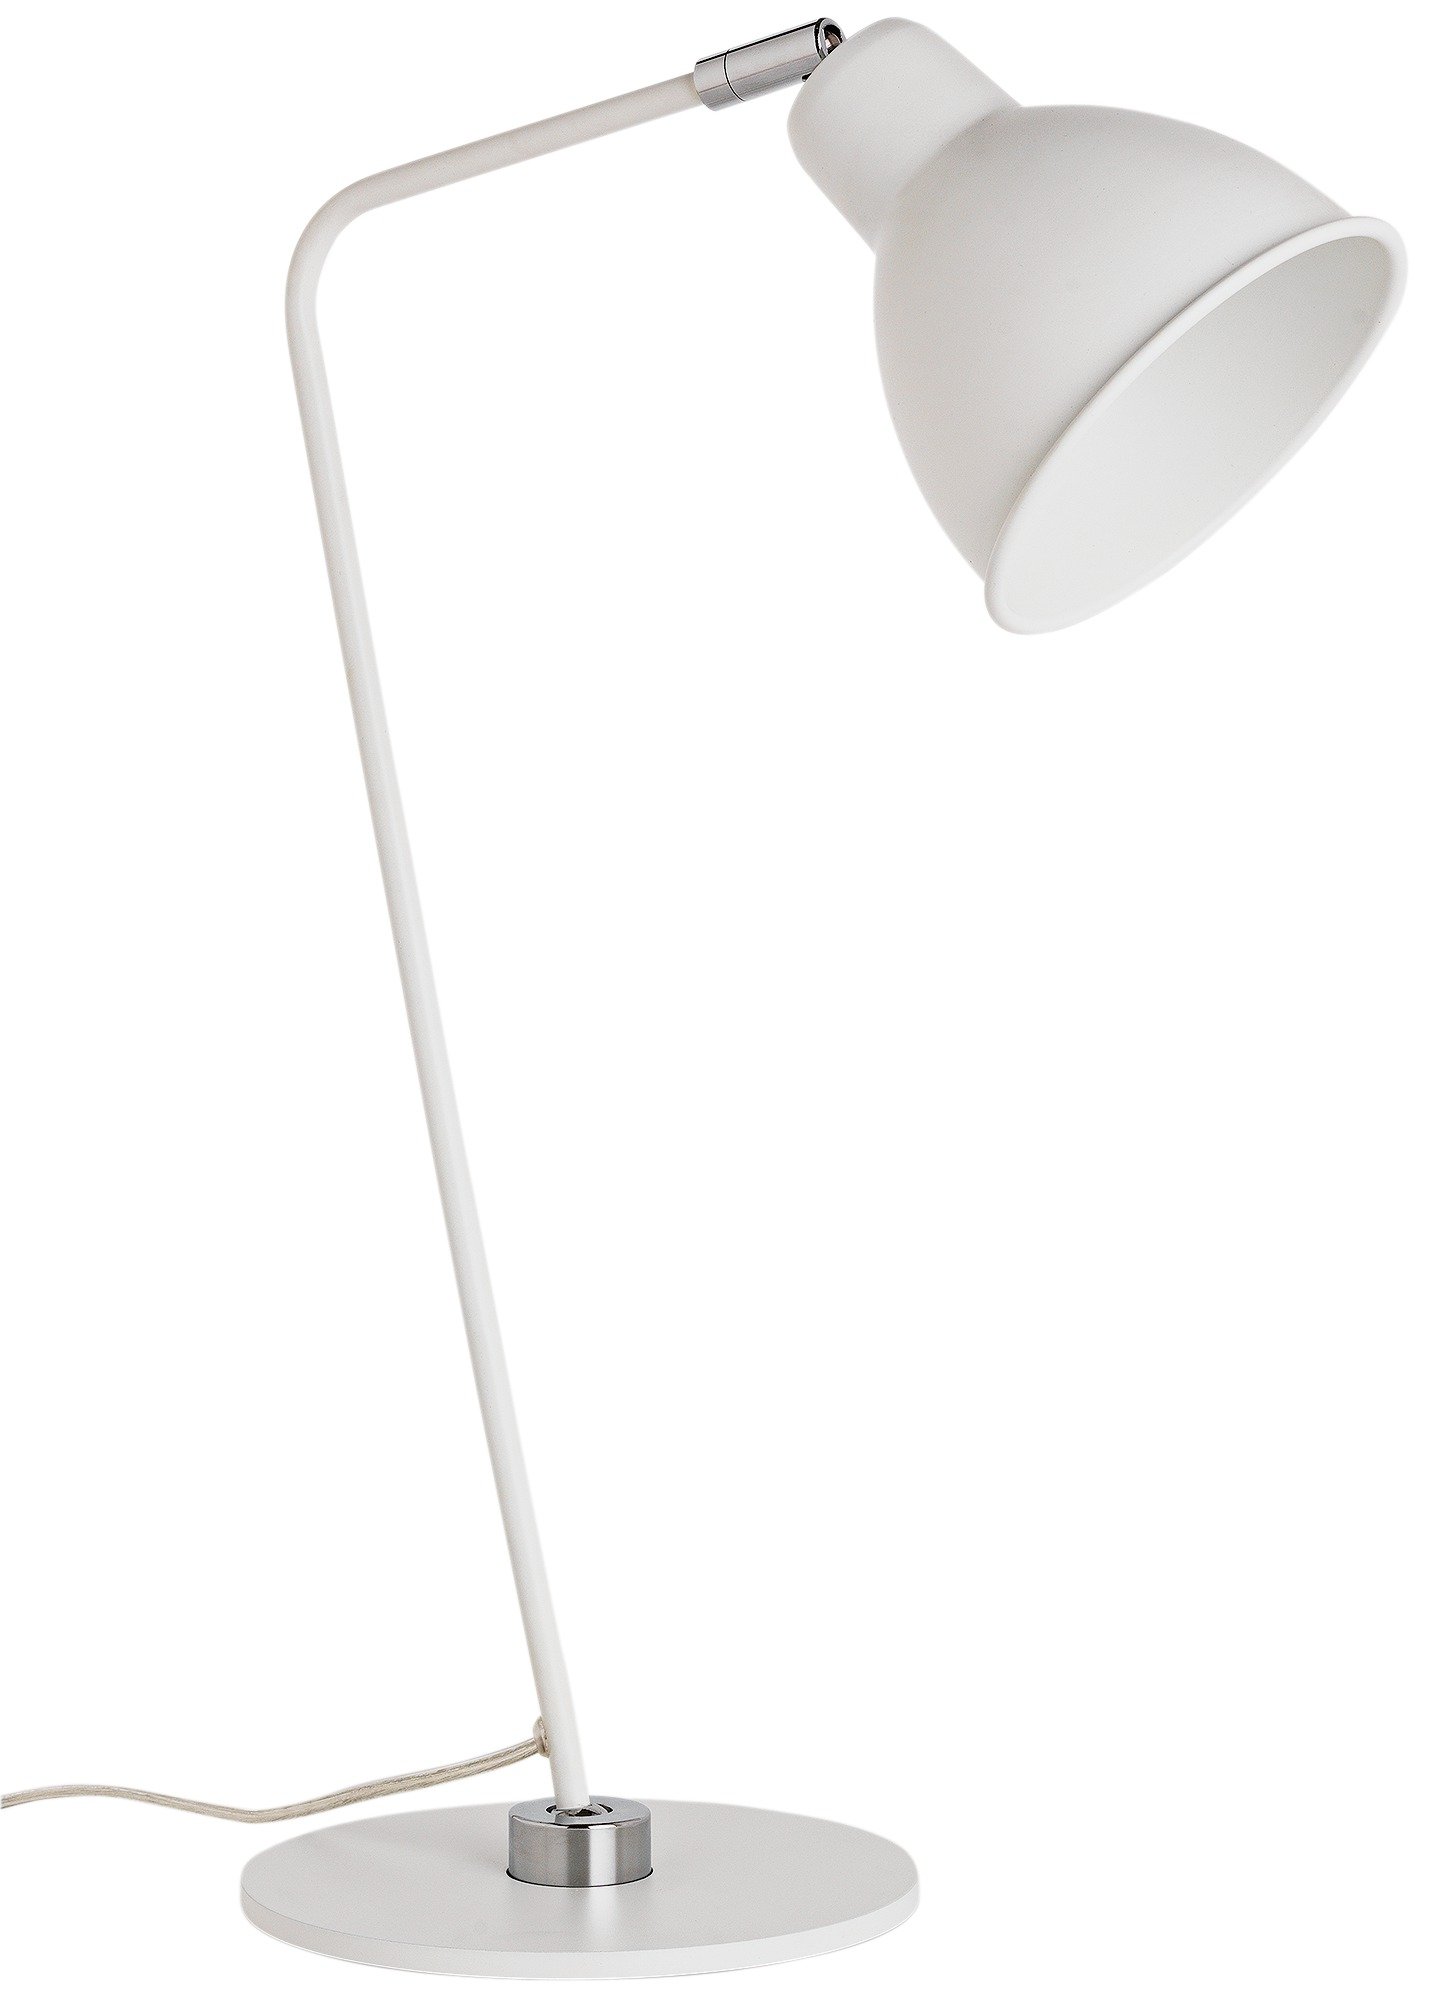 Heart of House Slane Leaning Task Desk Lamp - White & Chrome